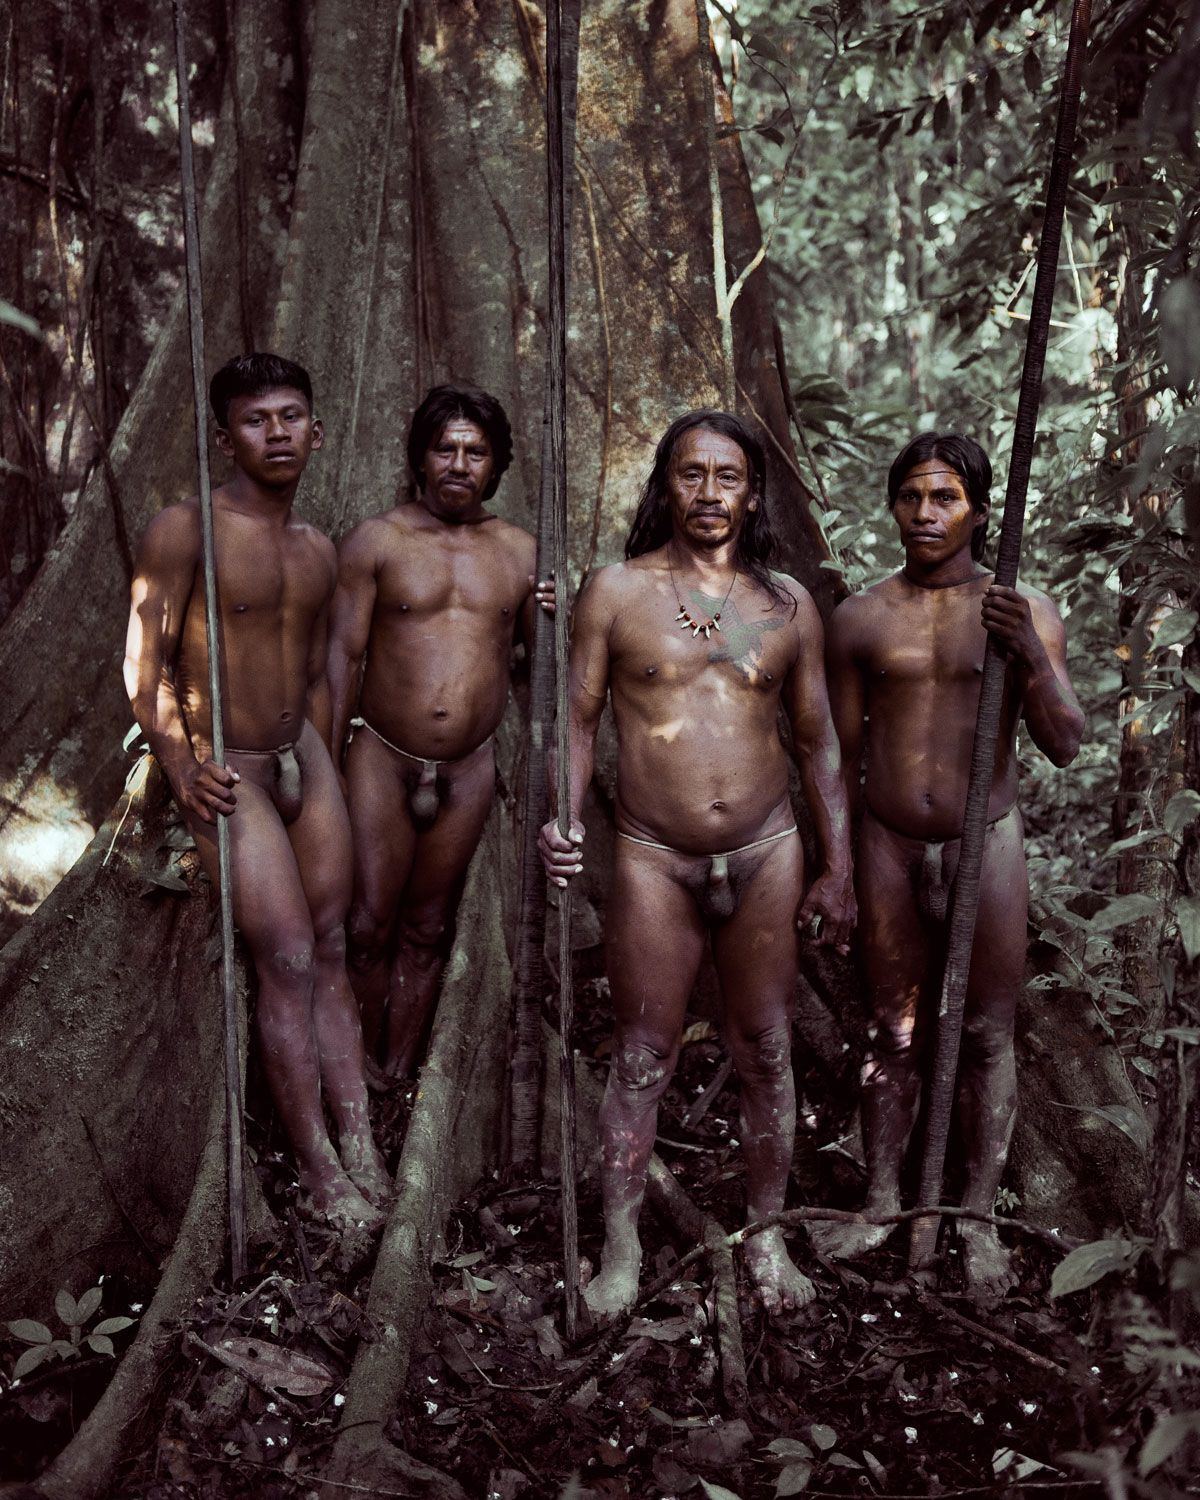 Buzz A. reccomend Nude amazon tribes men